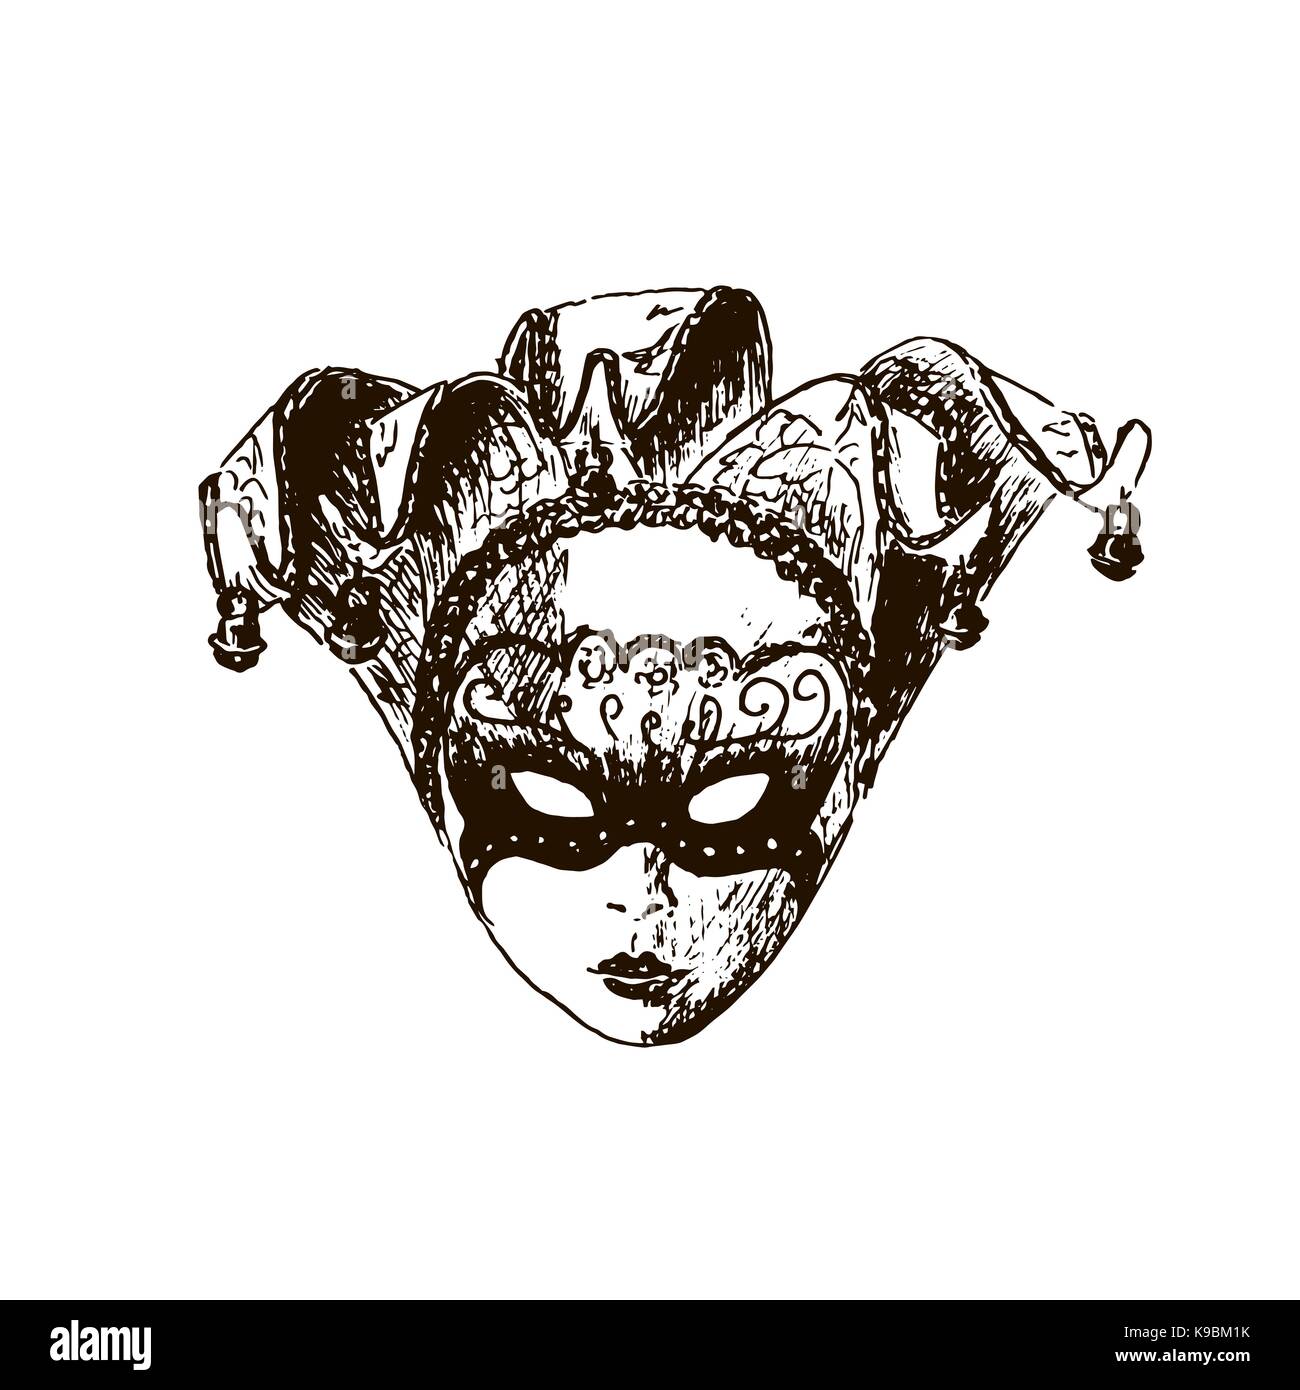 Colección de máscaras de carnaval de venecia dibujadas a mano